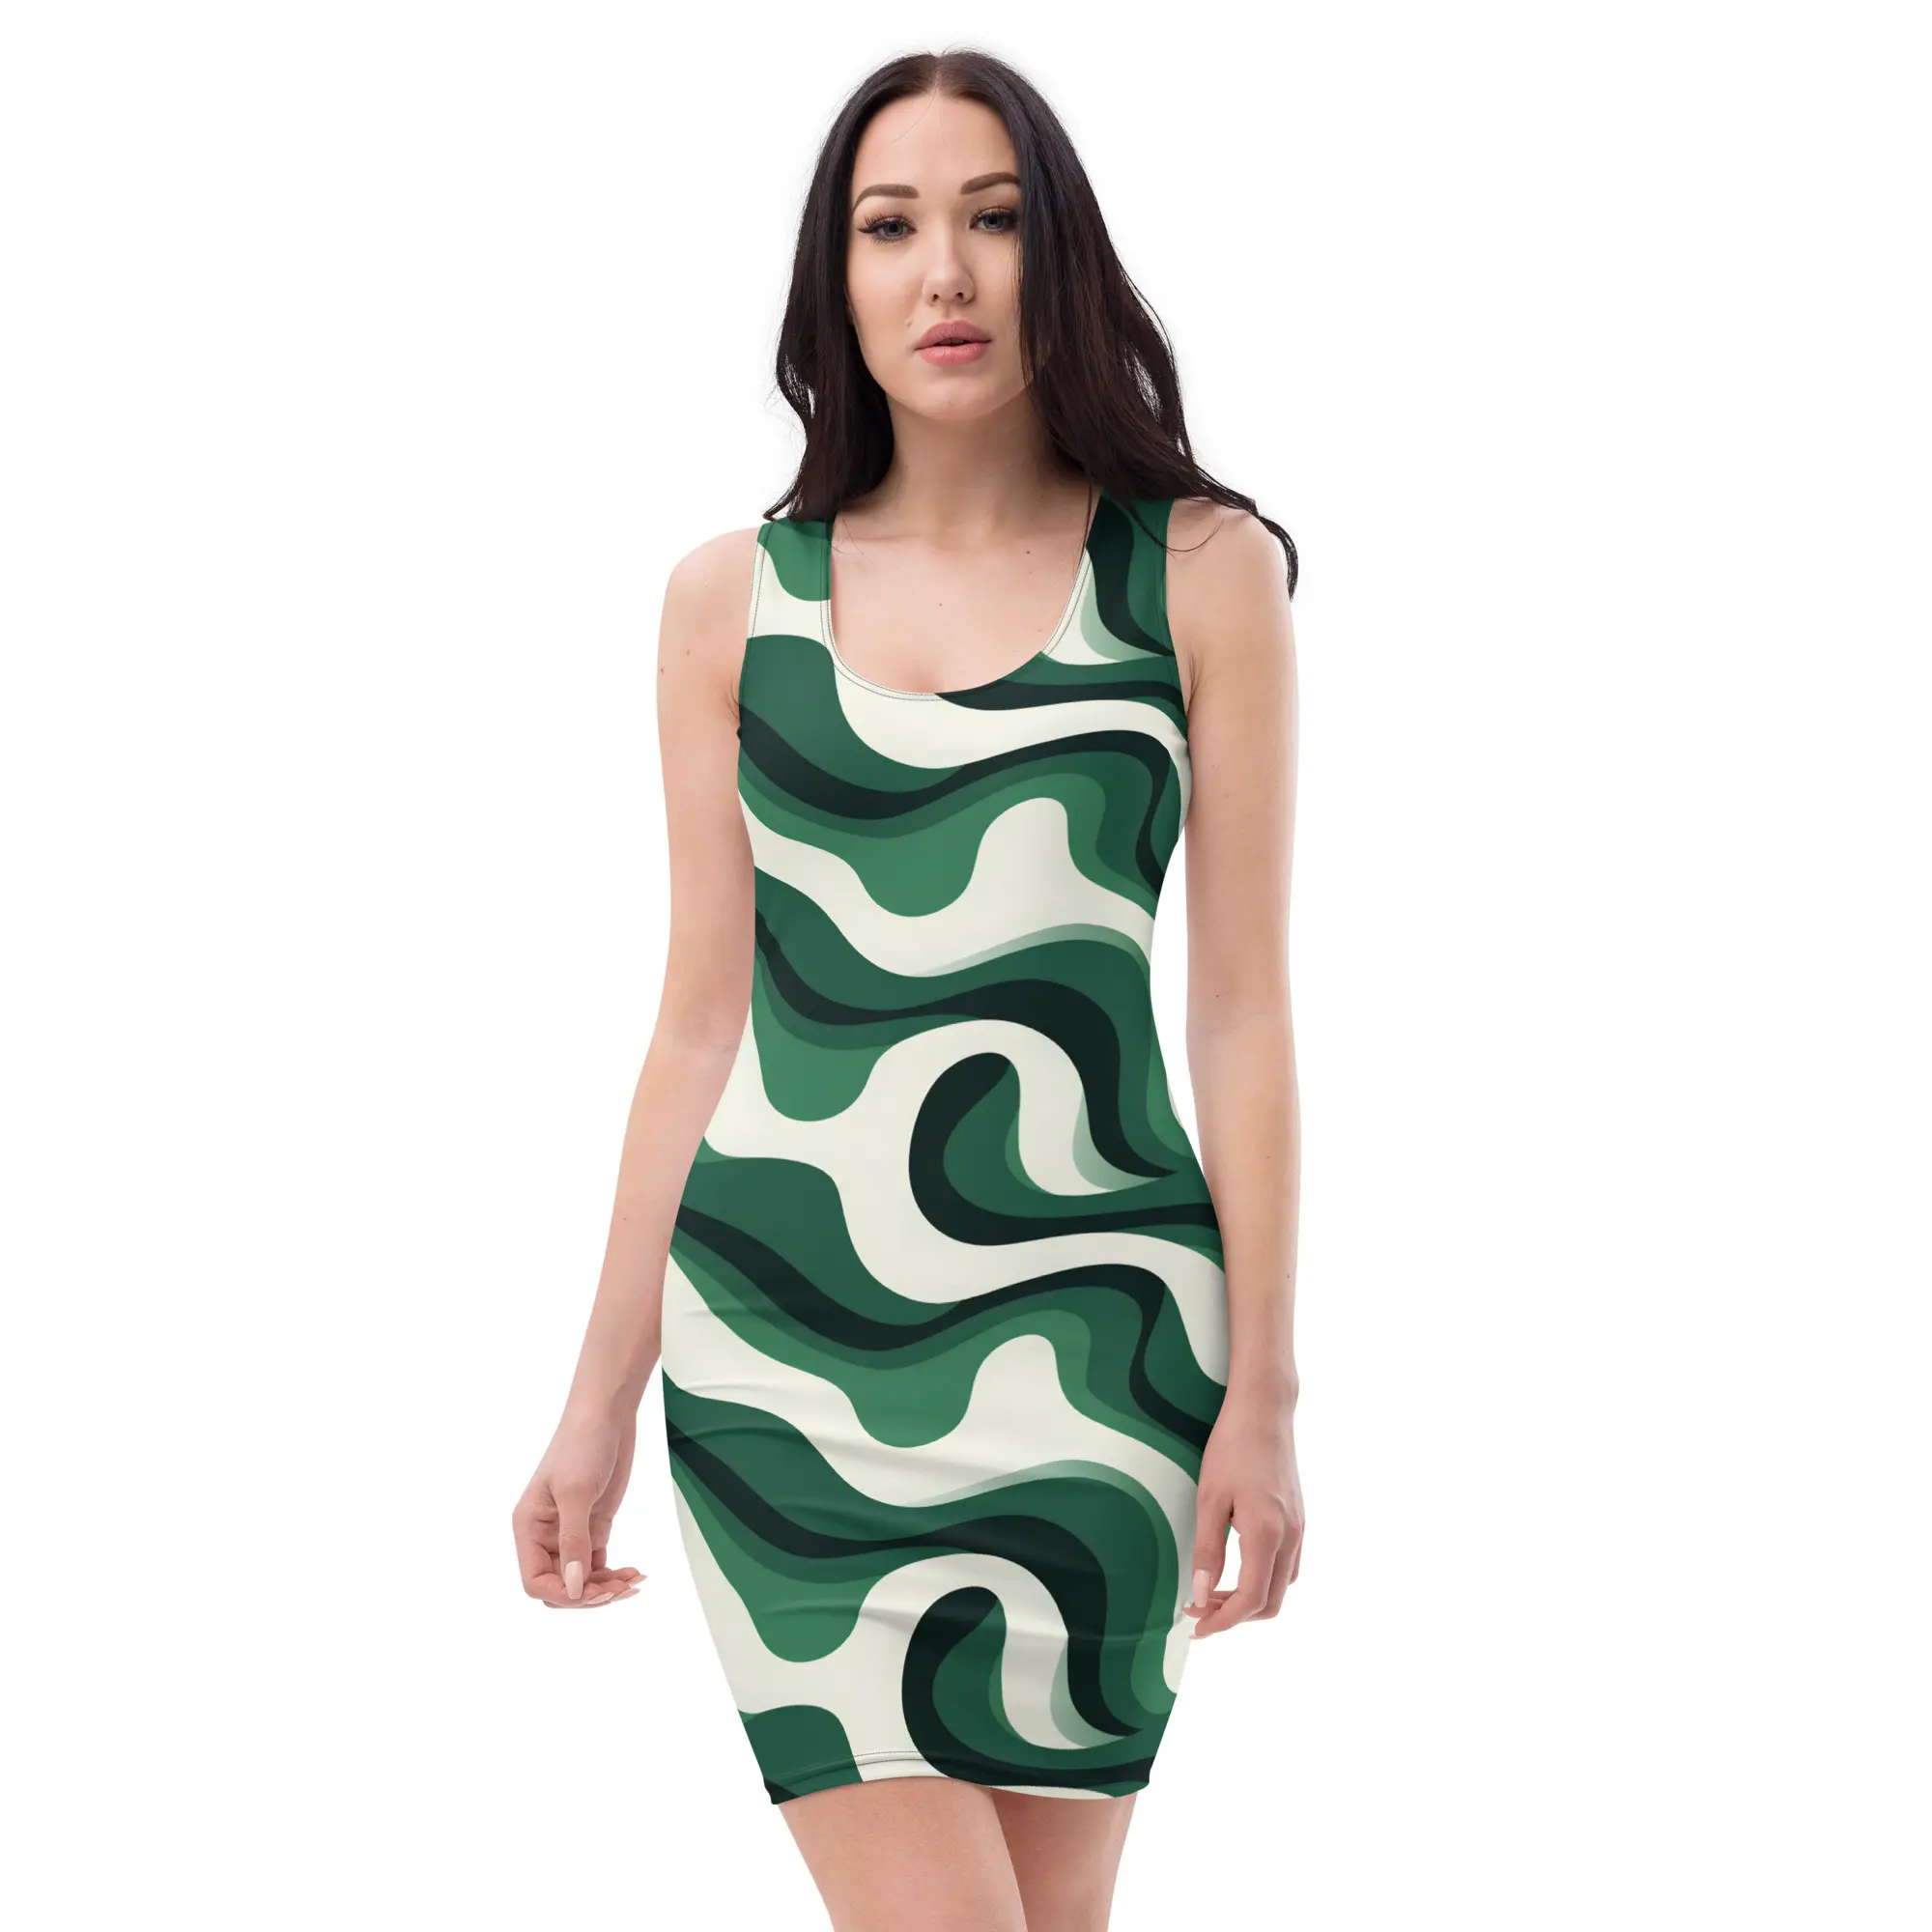 Çekici dalga şık yaratıcı tasarım yüksek kalite talep kız elbise Modern rahat parti akşam Bodycon Fit elbise kadınlar için